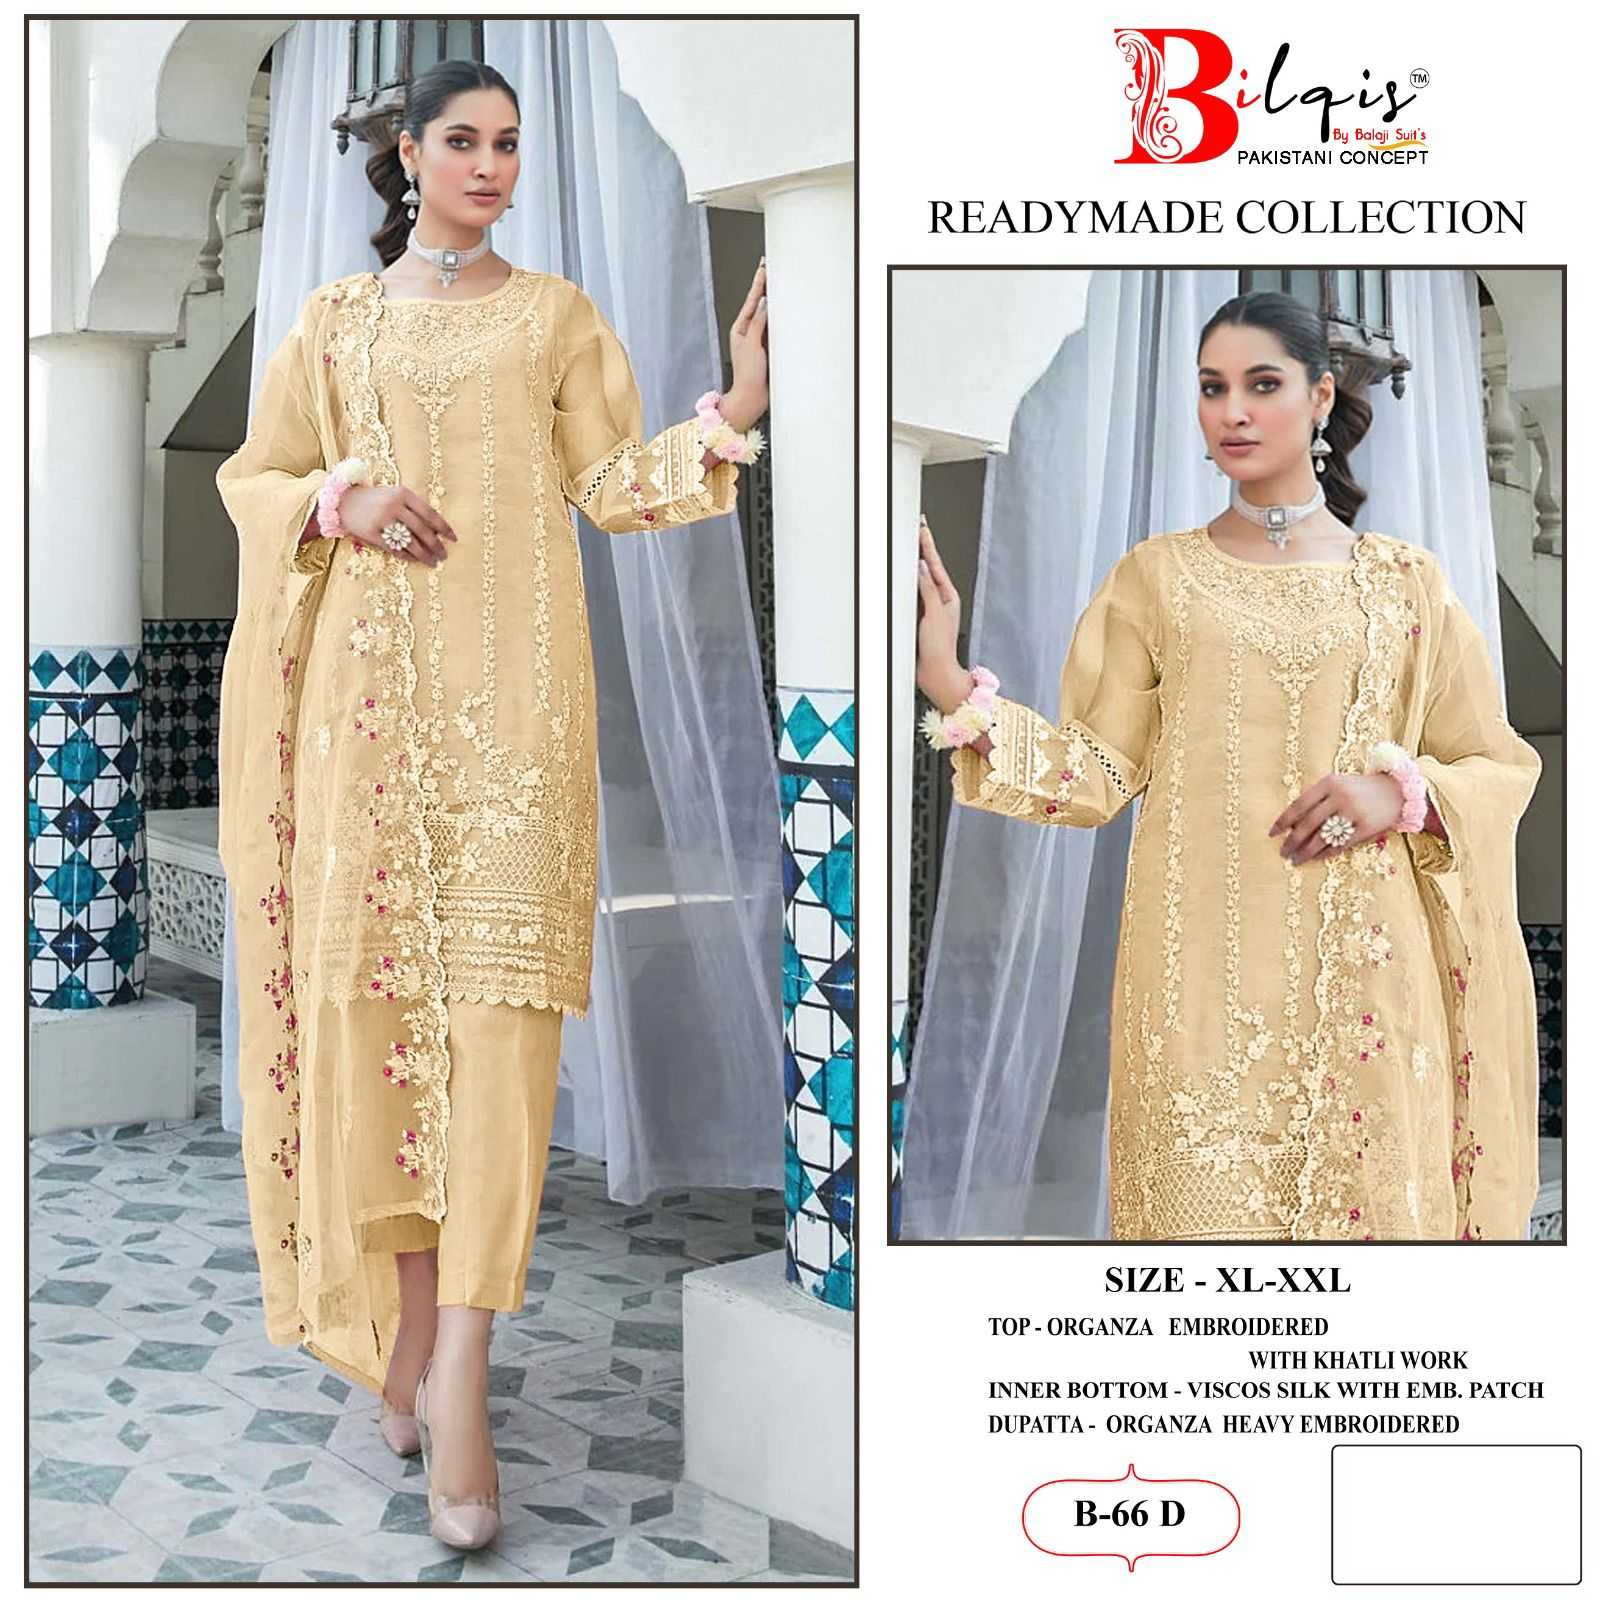 Bilqis B 66 A To D Organza Pakistani Suits Wholesale catalog